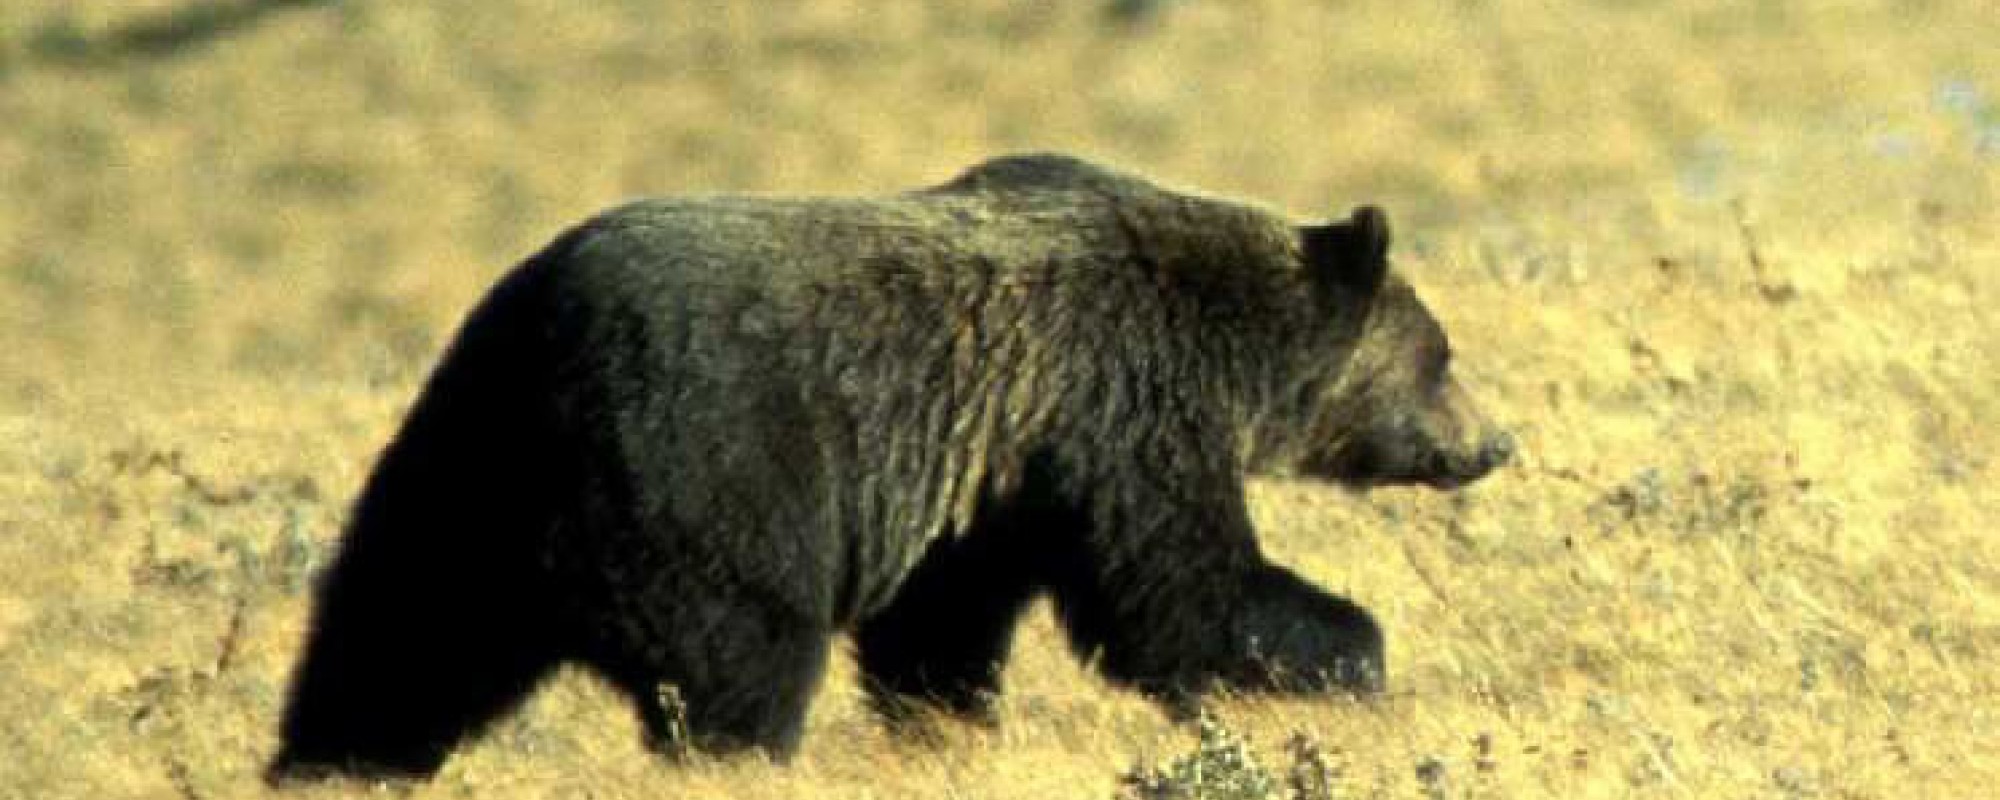 grizzly bear walking in a field